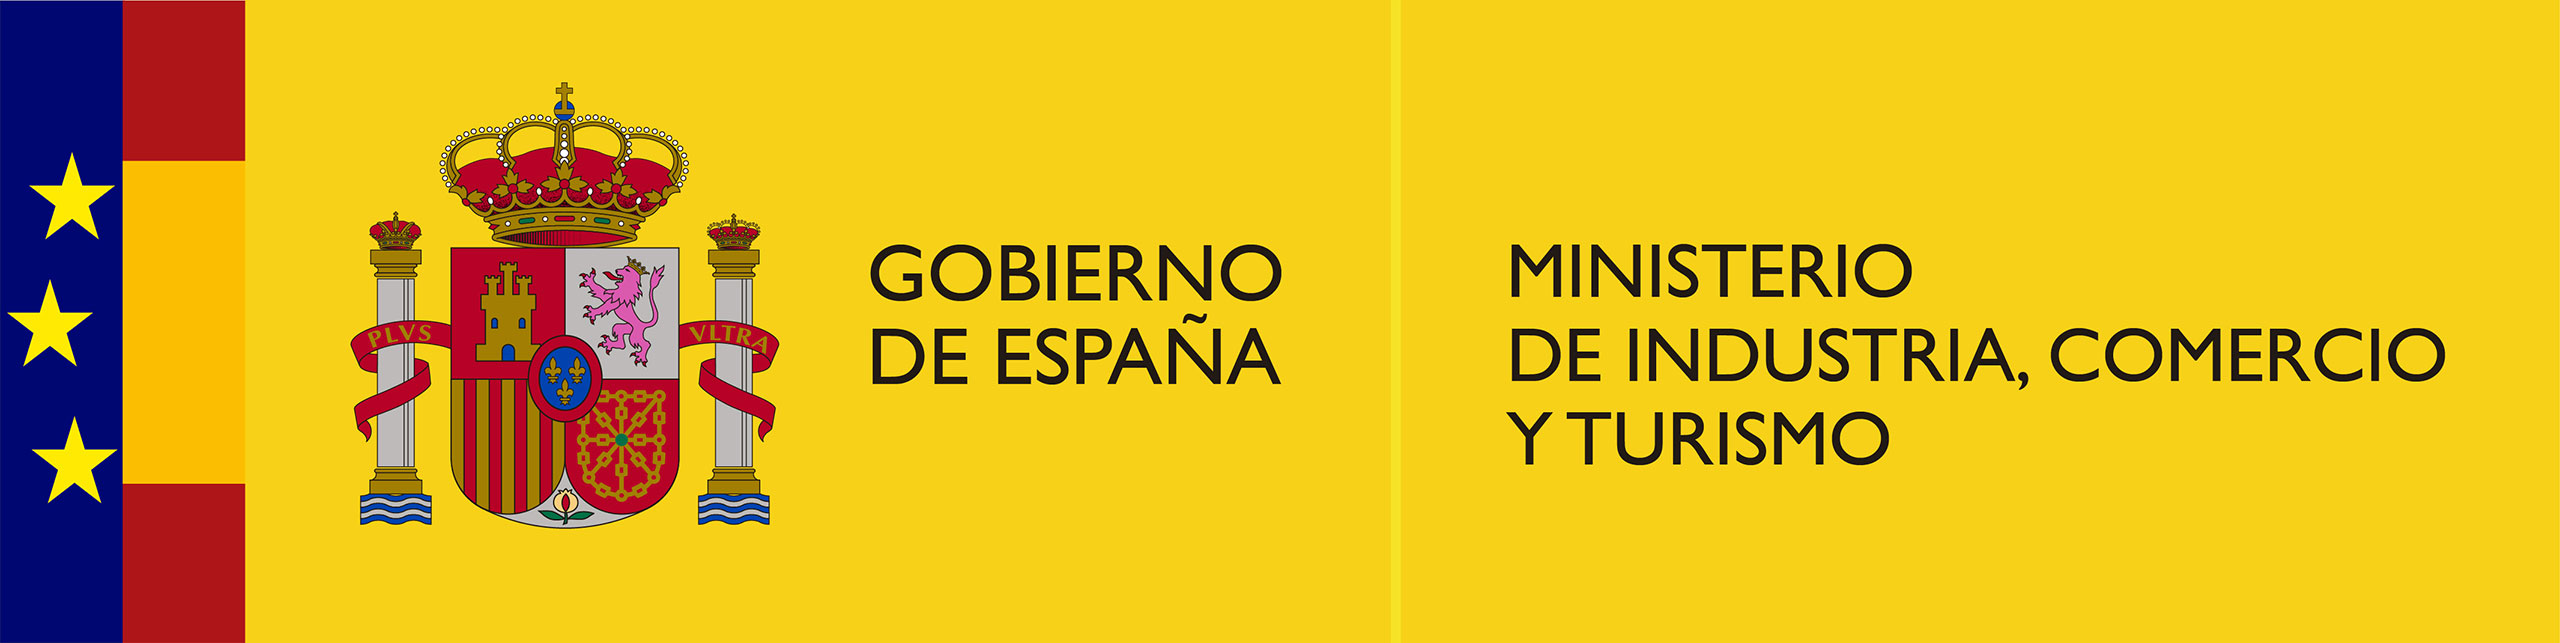 Gobierno de España. Ministerio de industria, comercio y Turismo